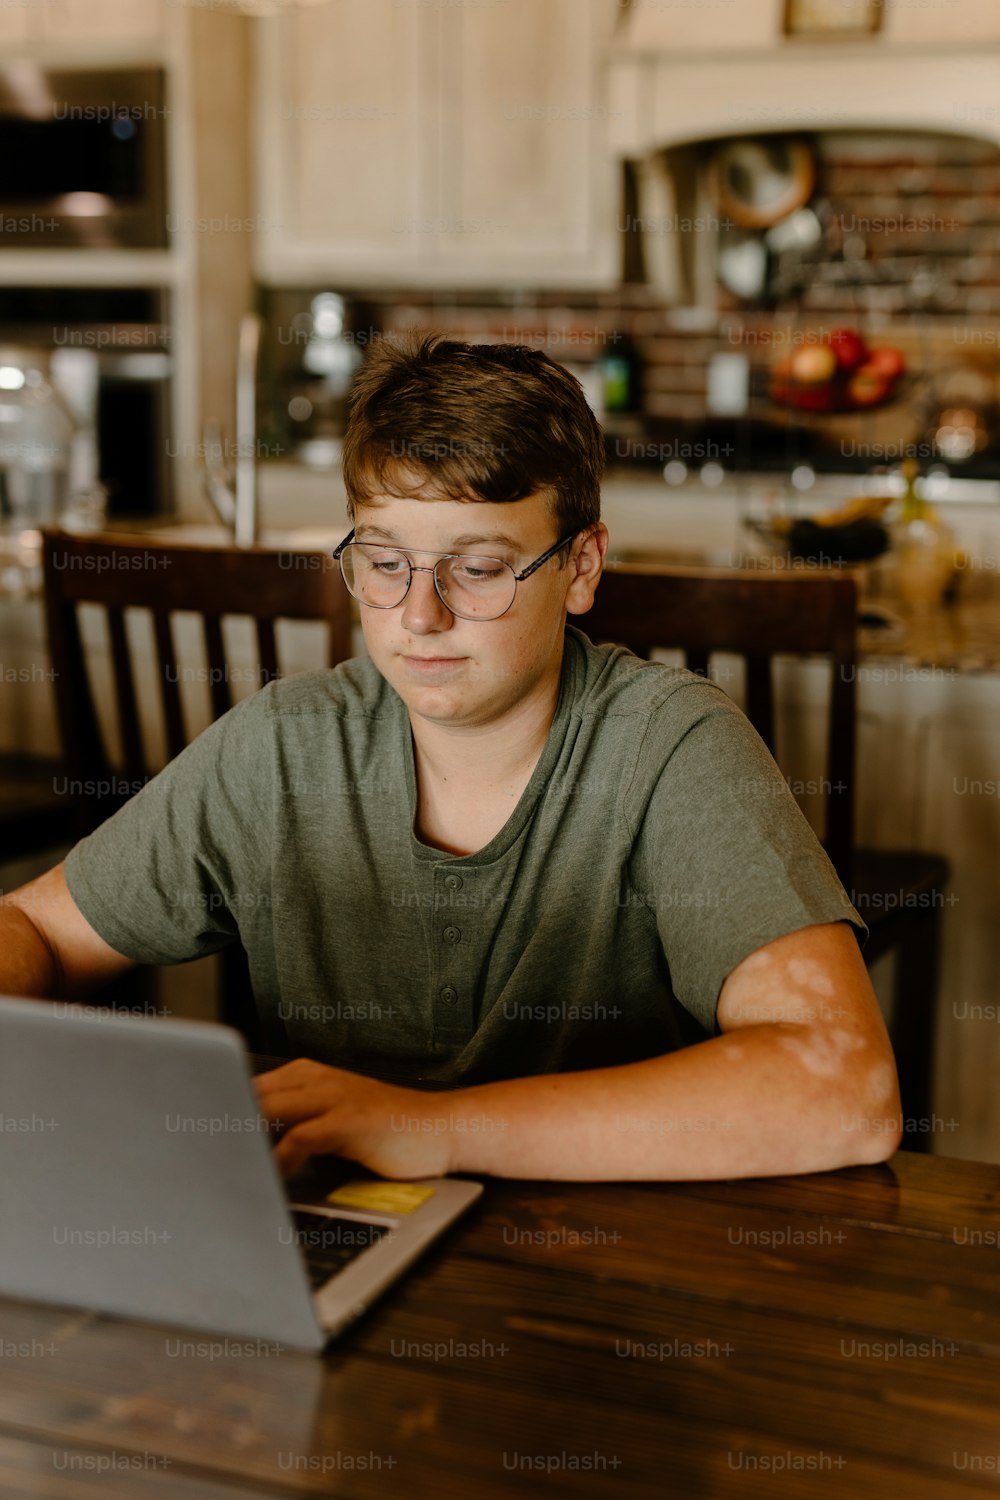 Un joven sentado en una mesa usando una computadora portátil